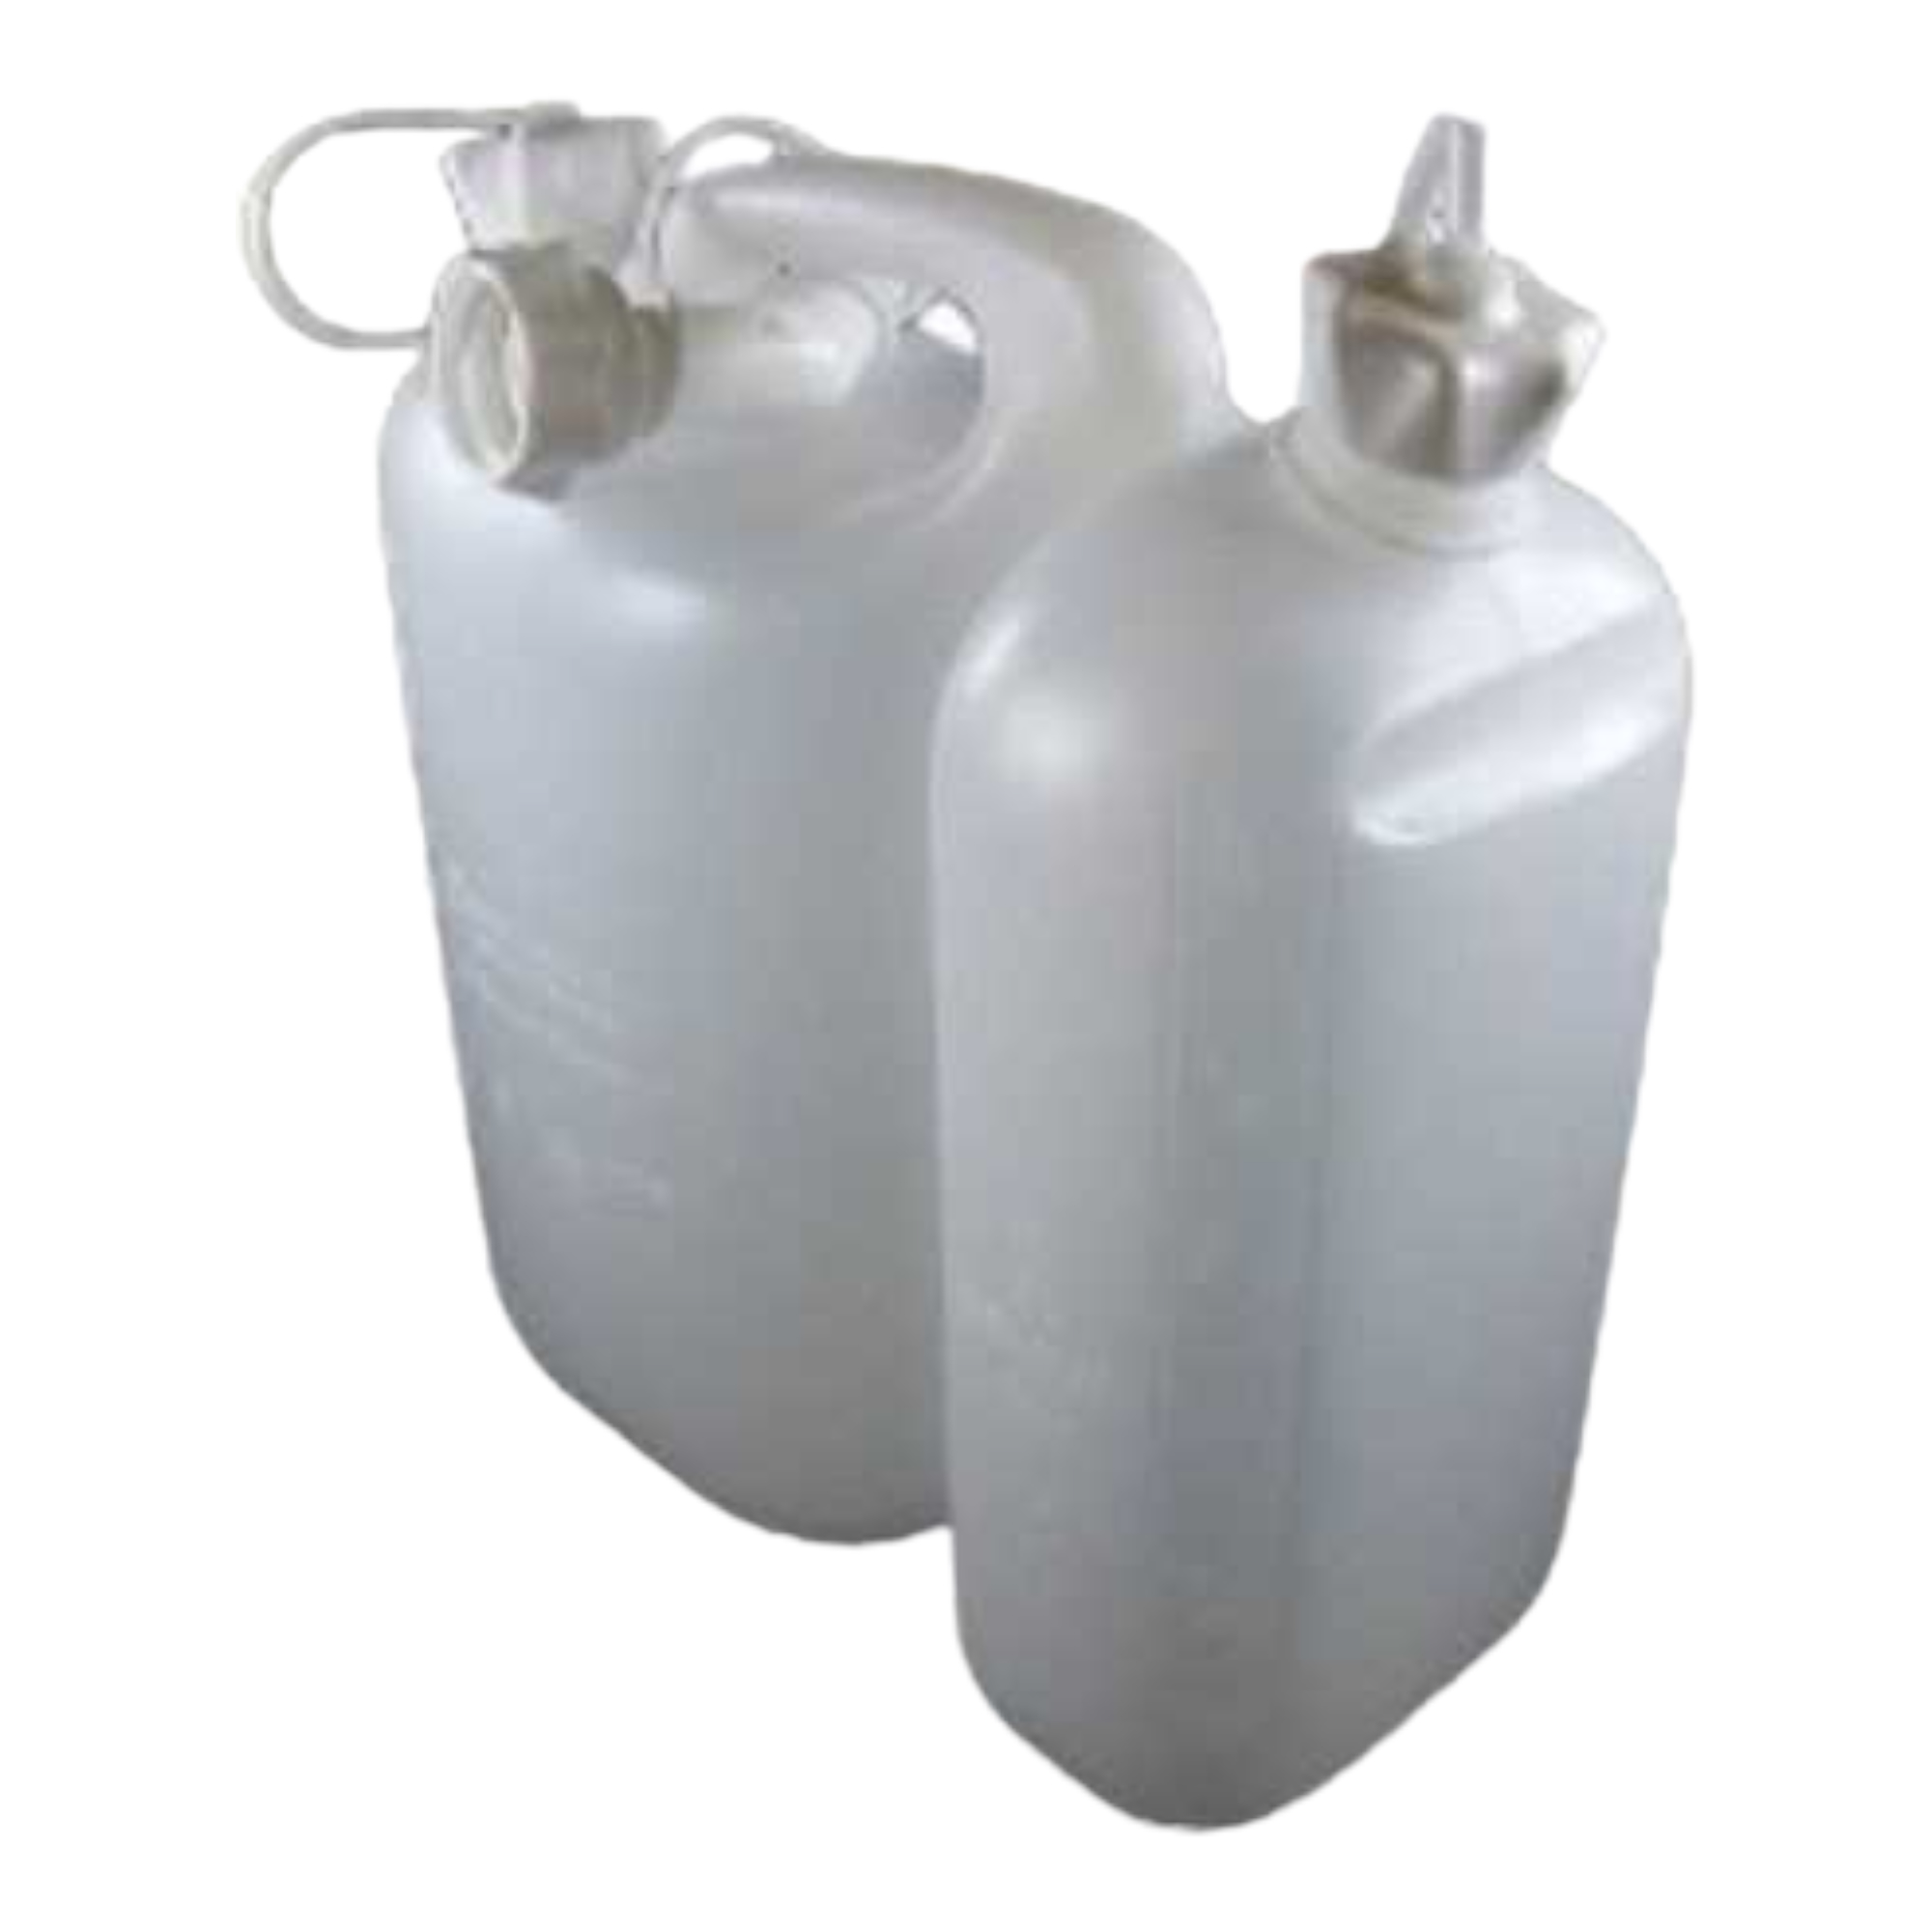 Kombi-Kanister für 3 Liter Öl und 5 Liter Benzin